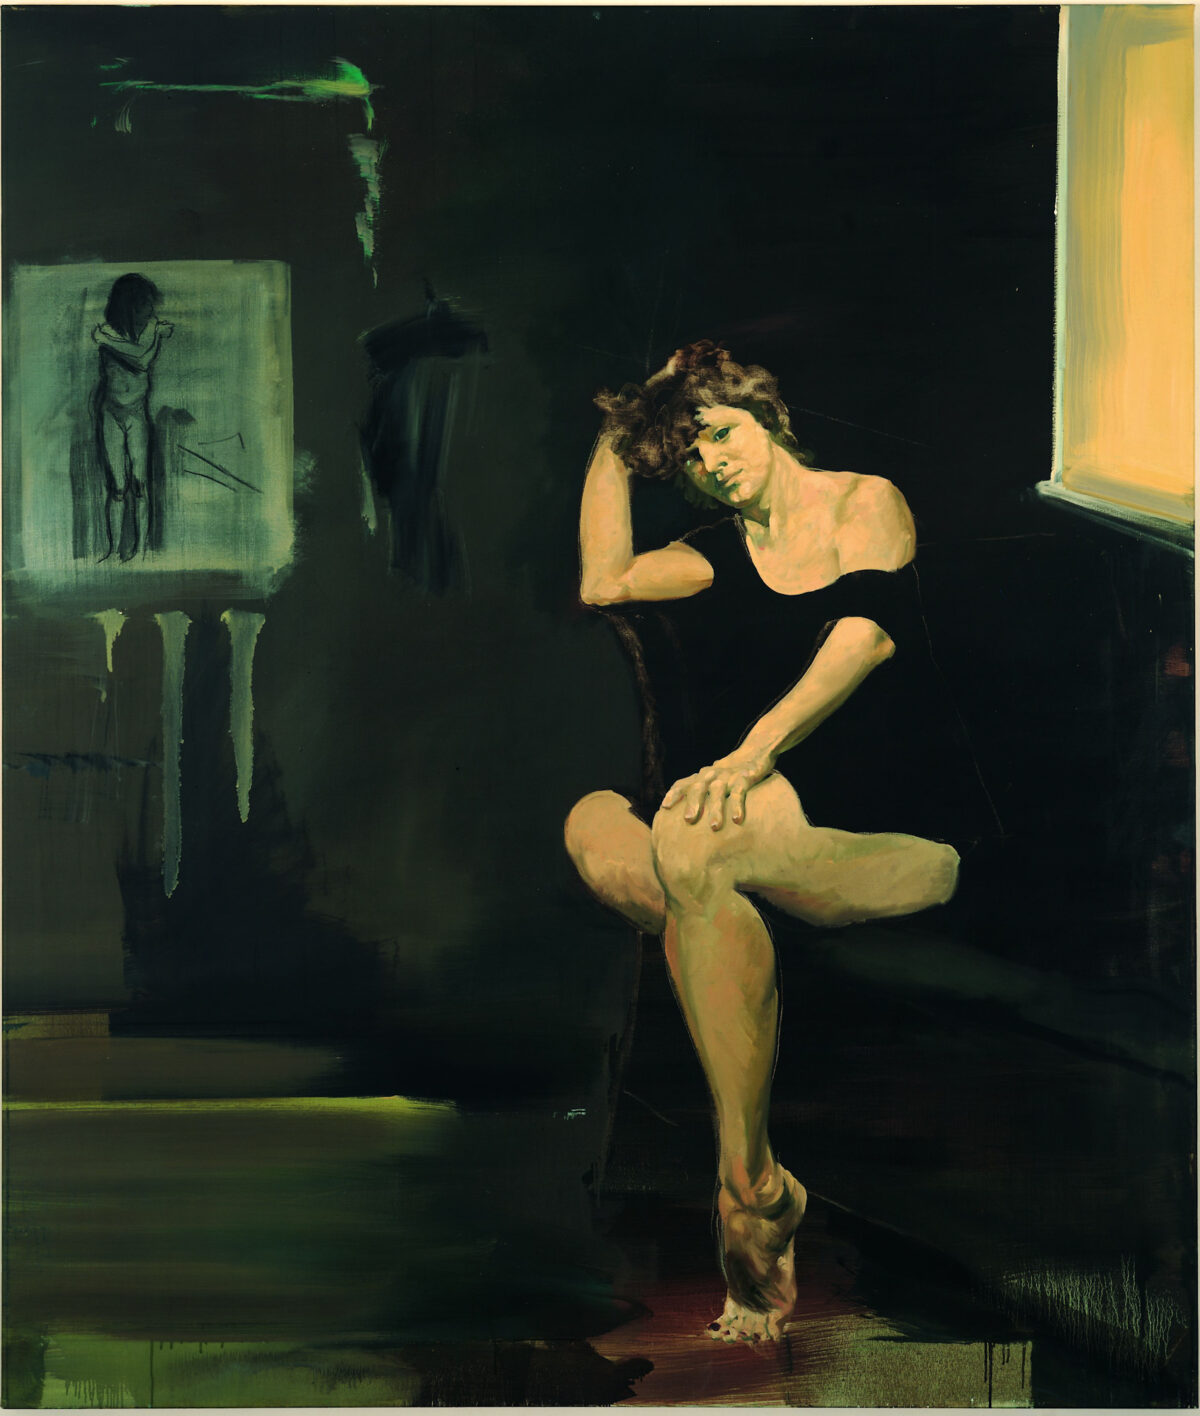 Eric Fischl “Portrait of an Artist as a Woman,” 1989. Oil on linen, 68” x 58.” COURTESY THE ARTIST